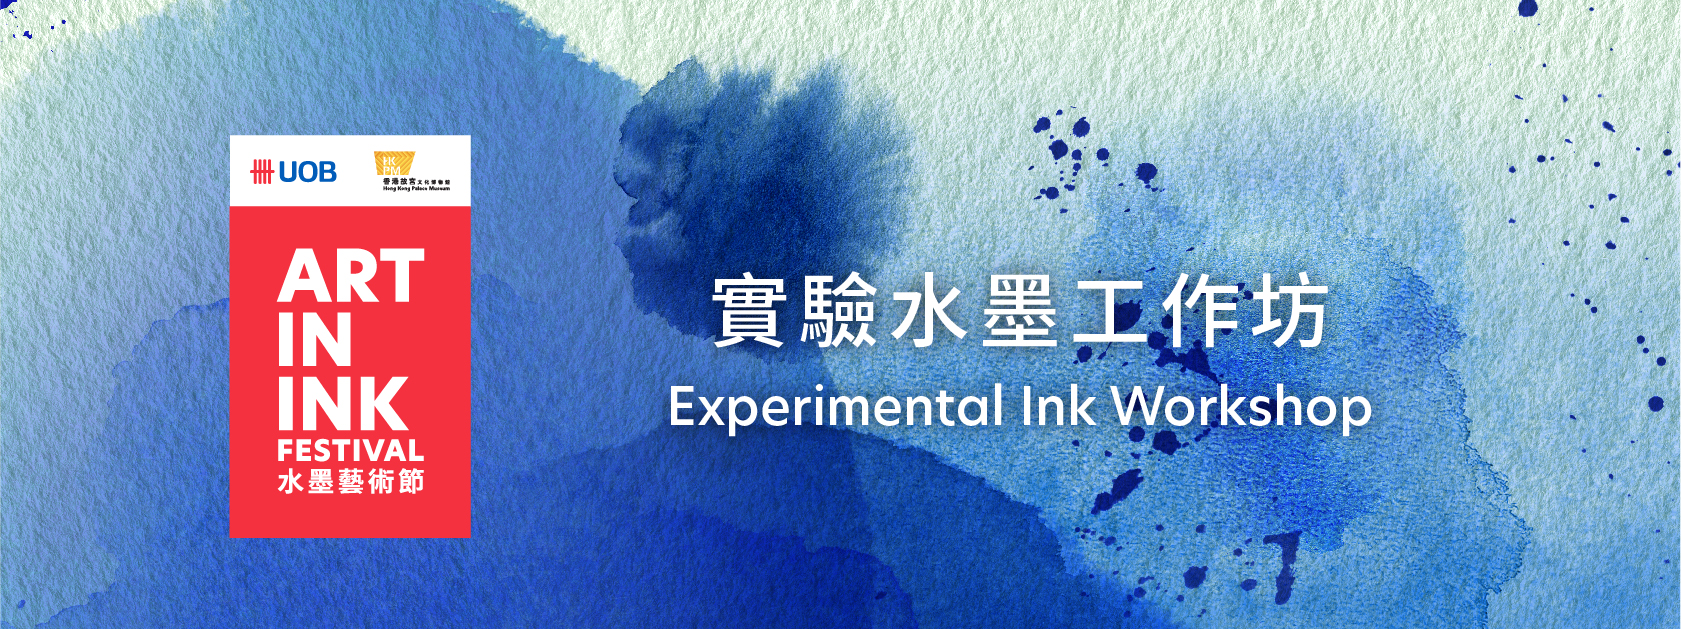 Experimental Ink Workshop